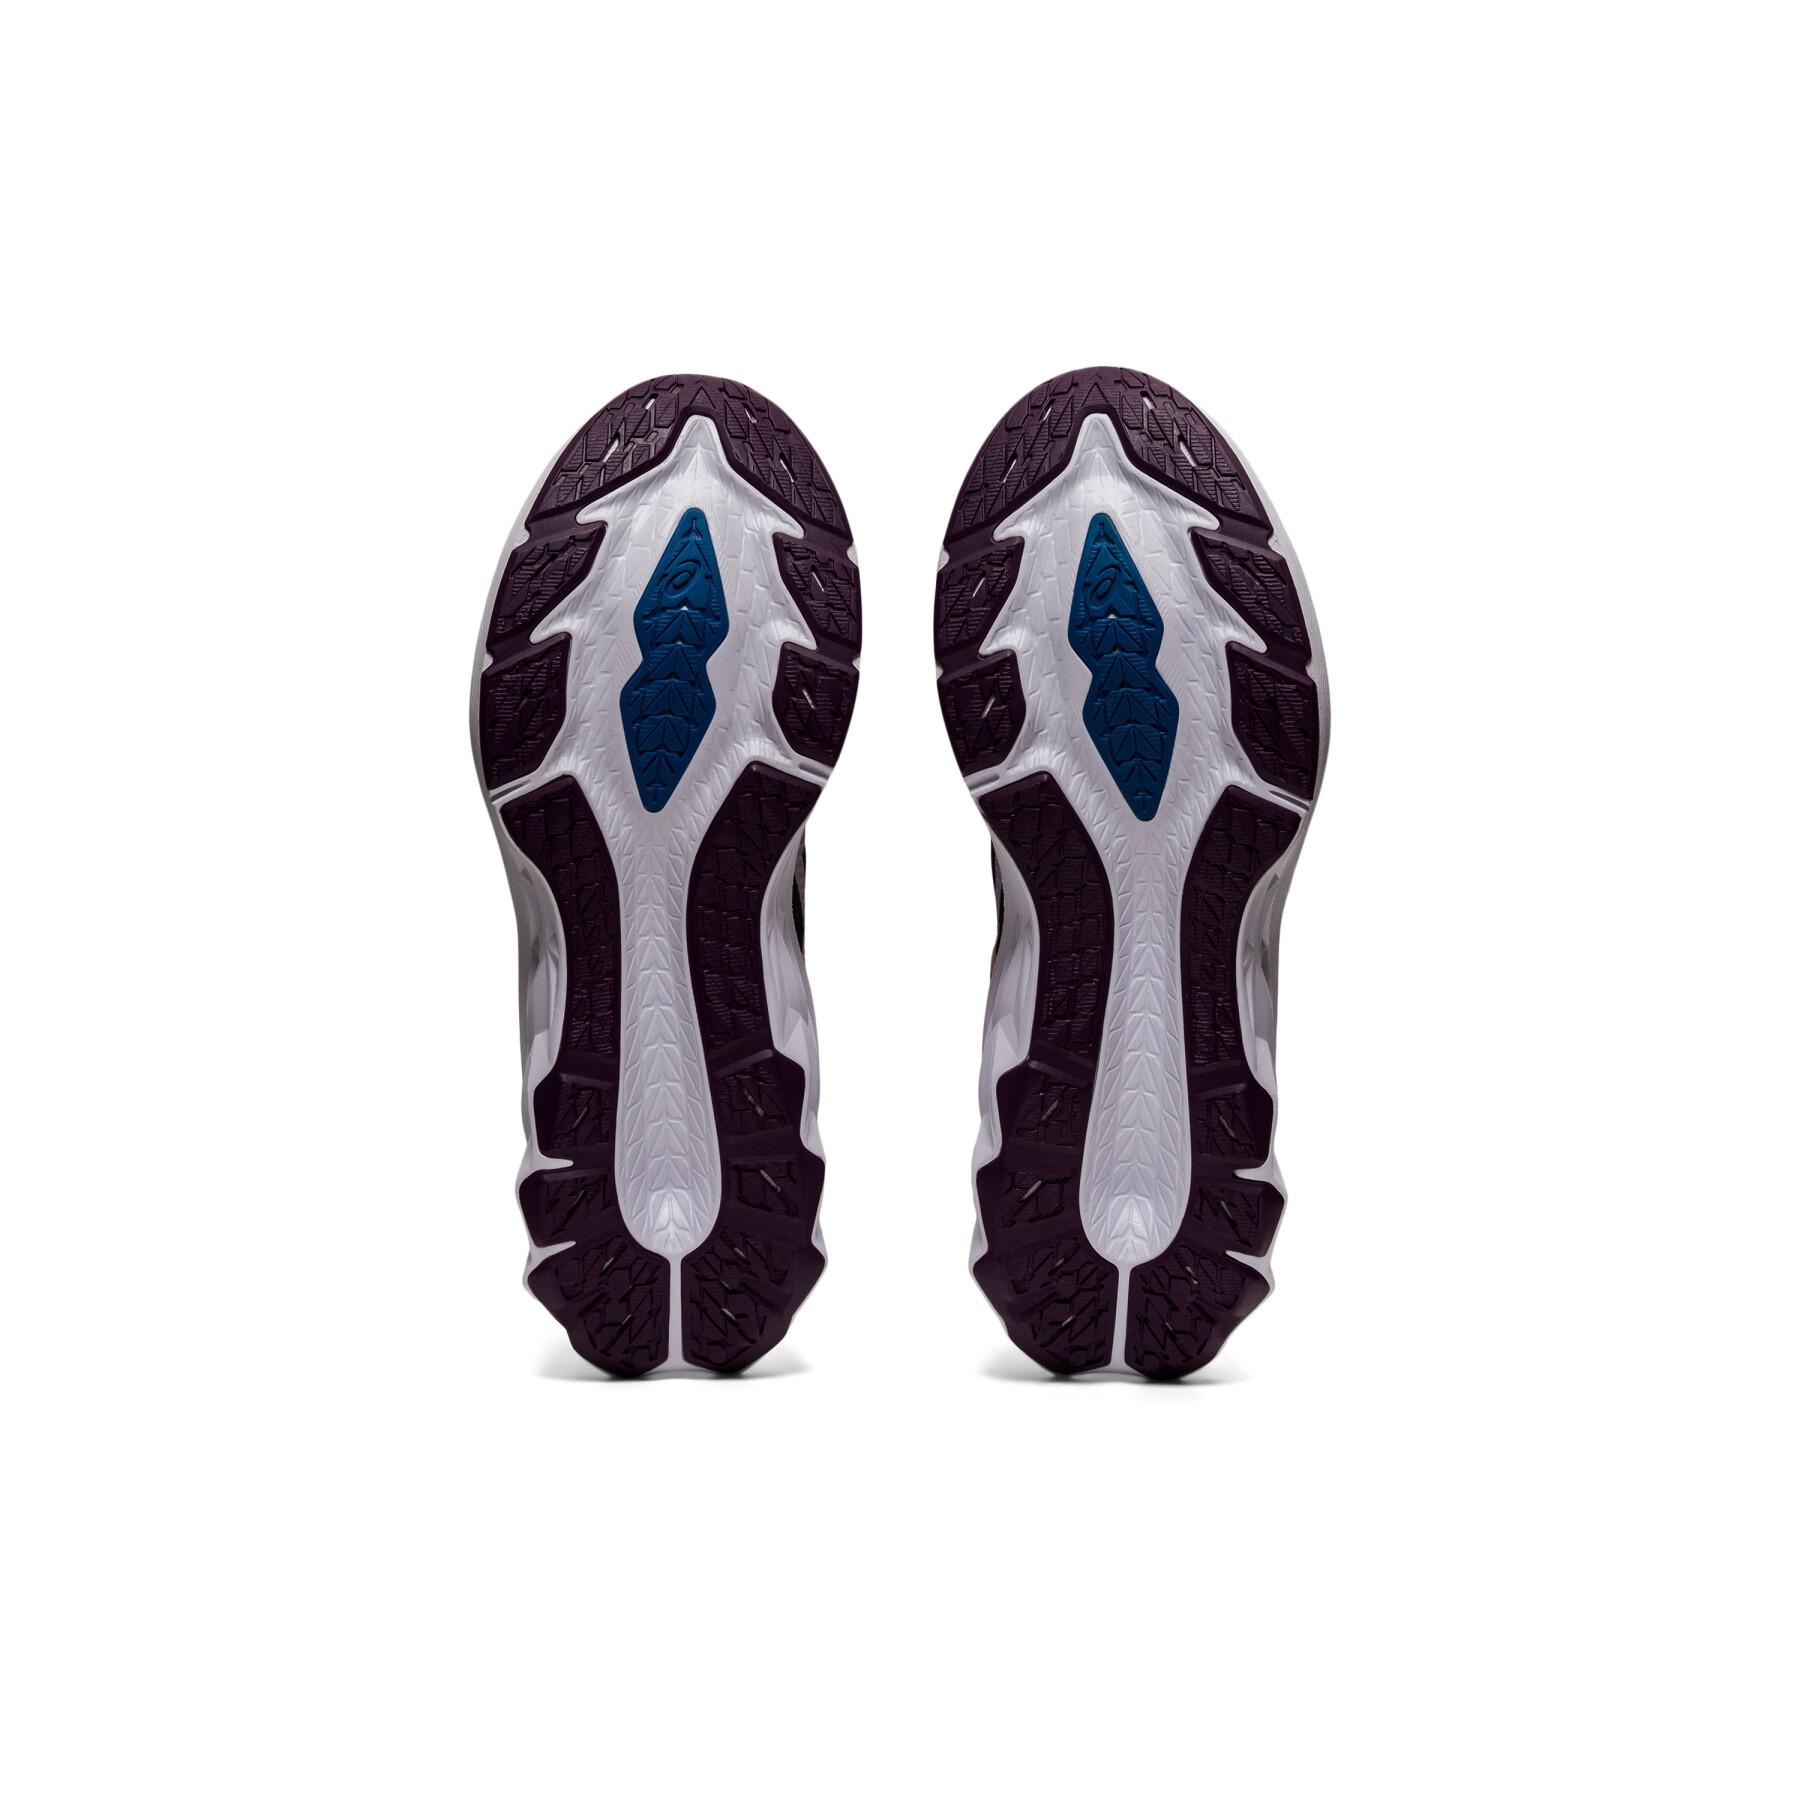 Chaussures de running femme Asics Novablast 2